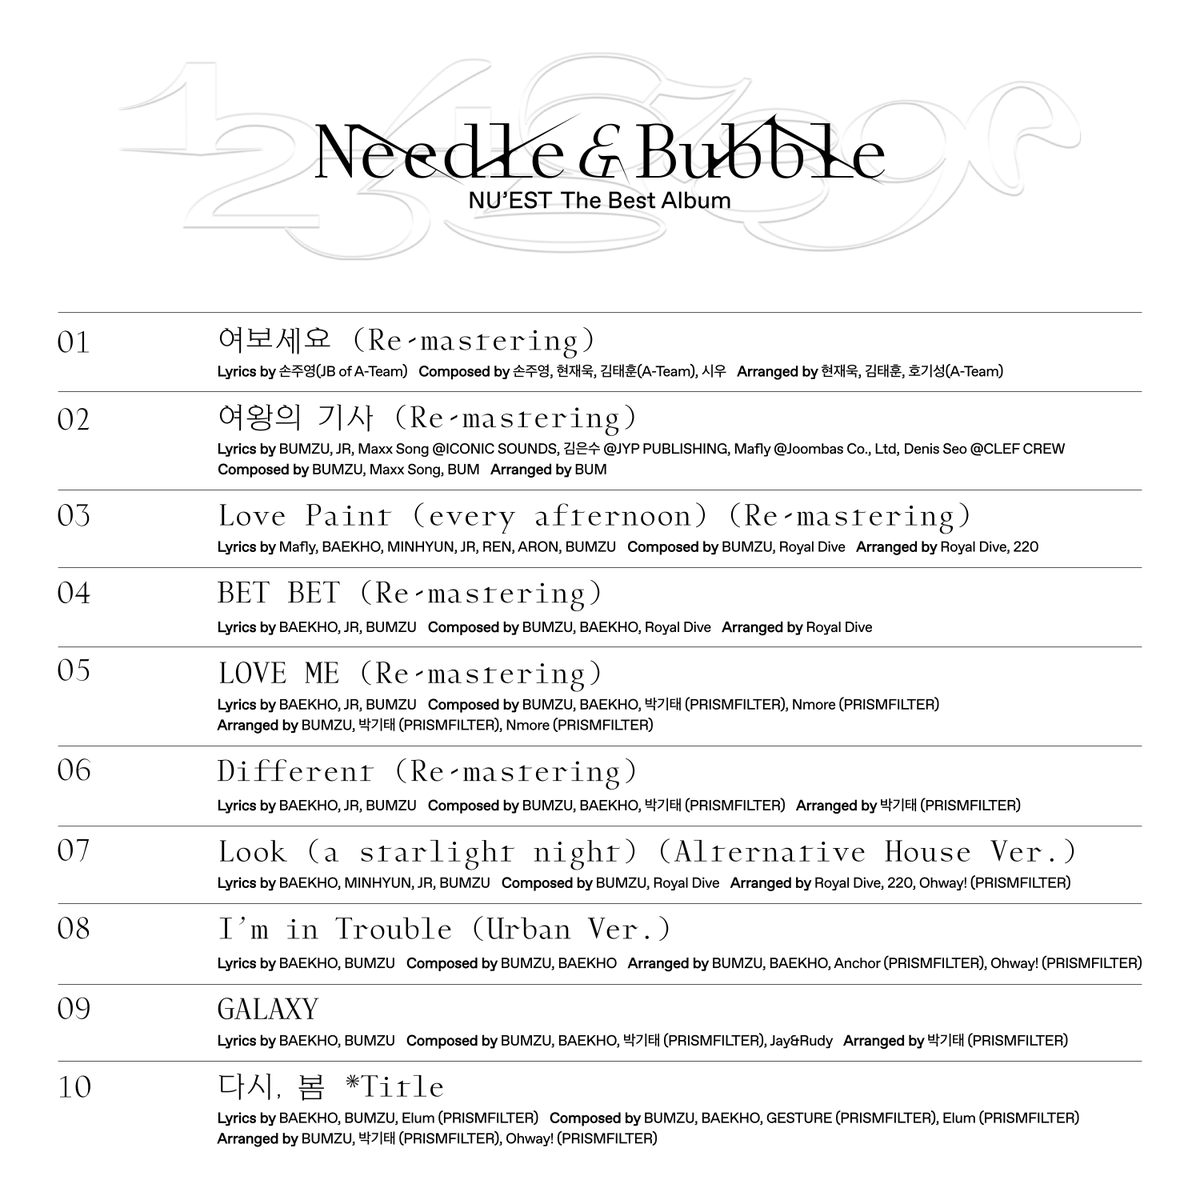 NU'EST The Best Album 'Needle & Bubble' Track List
🪄🔮 Title Track '다시, 봄'
💿 2022.03.15 6PM KST

#NUEST_JR_아론_백호_민현_렌
#뉴이스트 #NUEST #Needle_n_Bubble #다시_봄
#NUEST_다시_봄
#20220315_6PM_KST